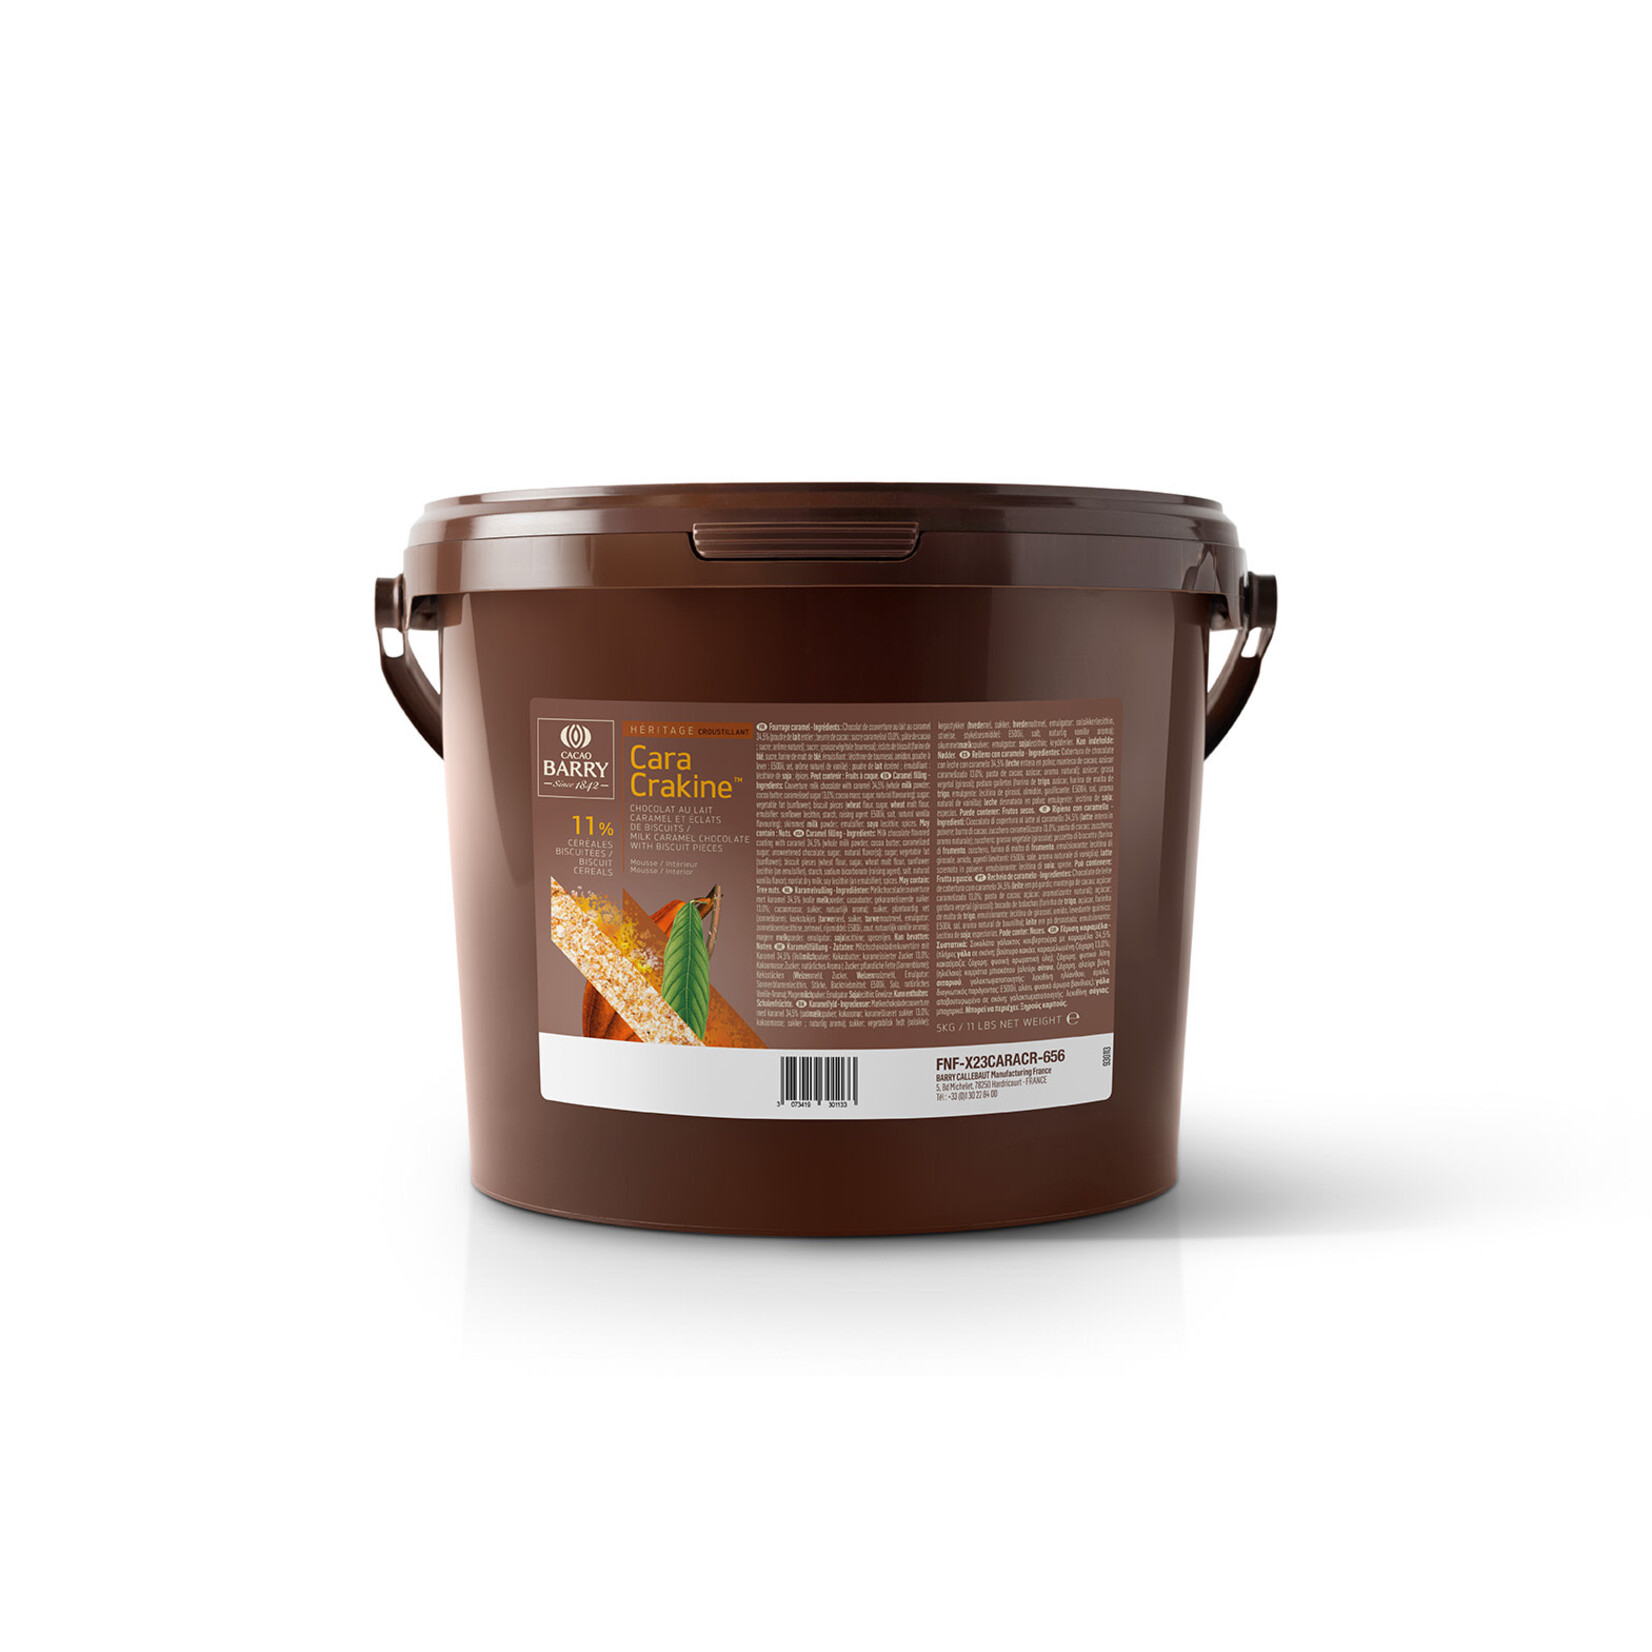 Cacao Barry Cacao Barry - Cara Crakine 34.5% - 11 lb